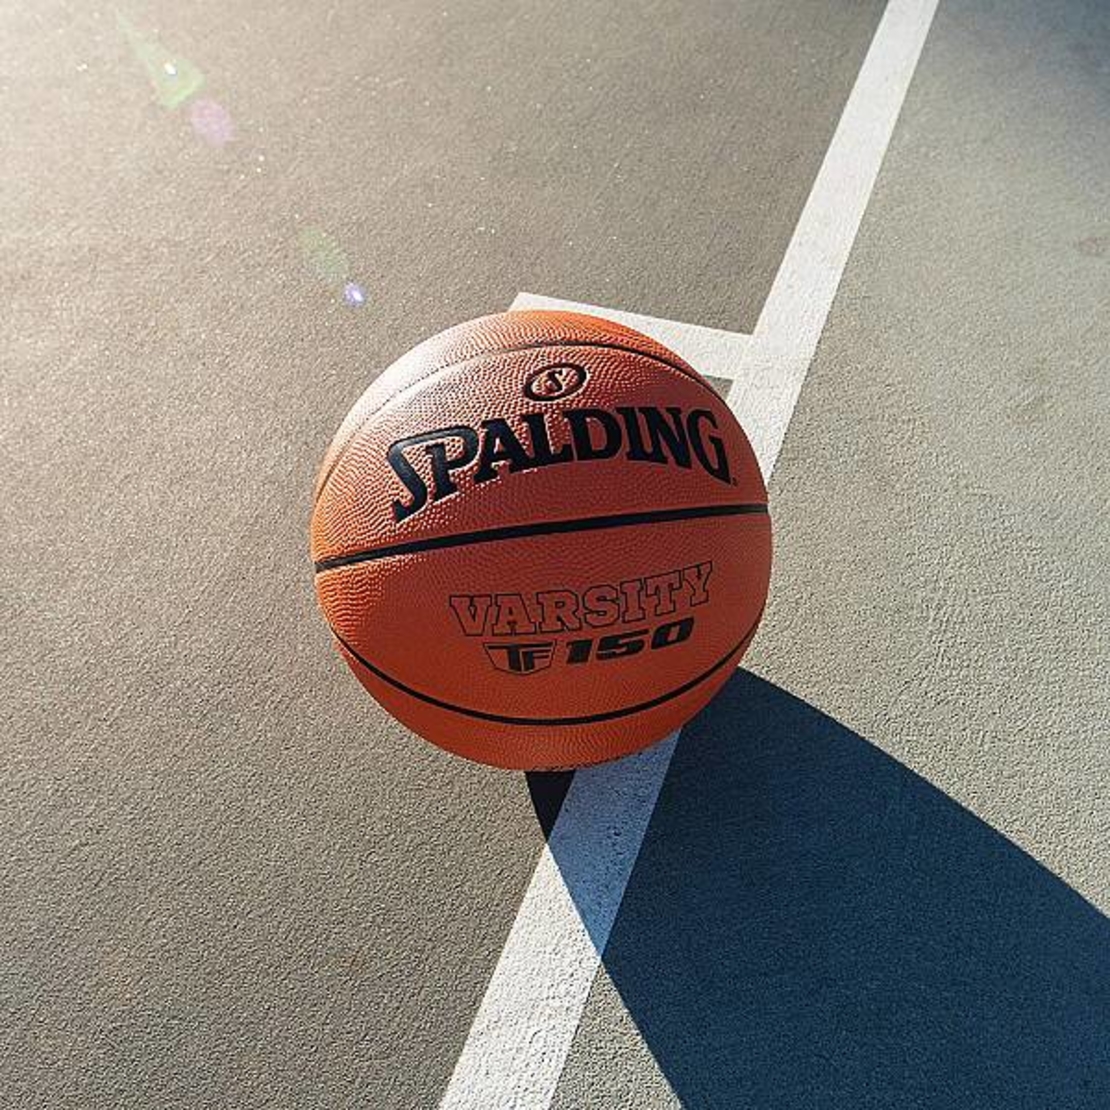 כדור כדורסל ספולדינג גומי כתום גודל 6 SPALDING